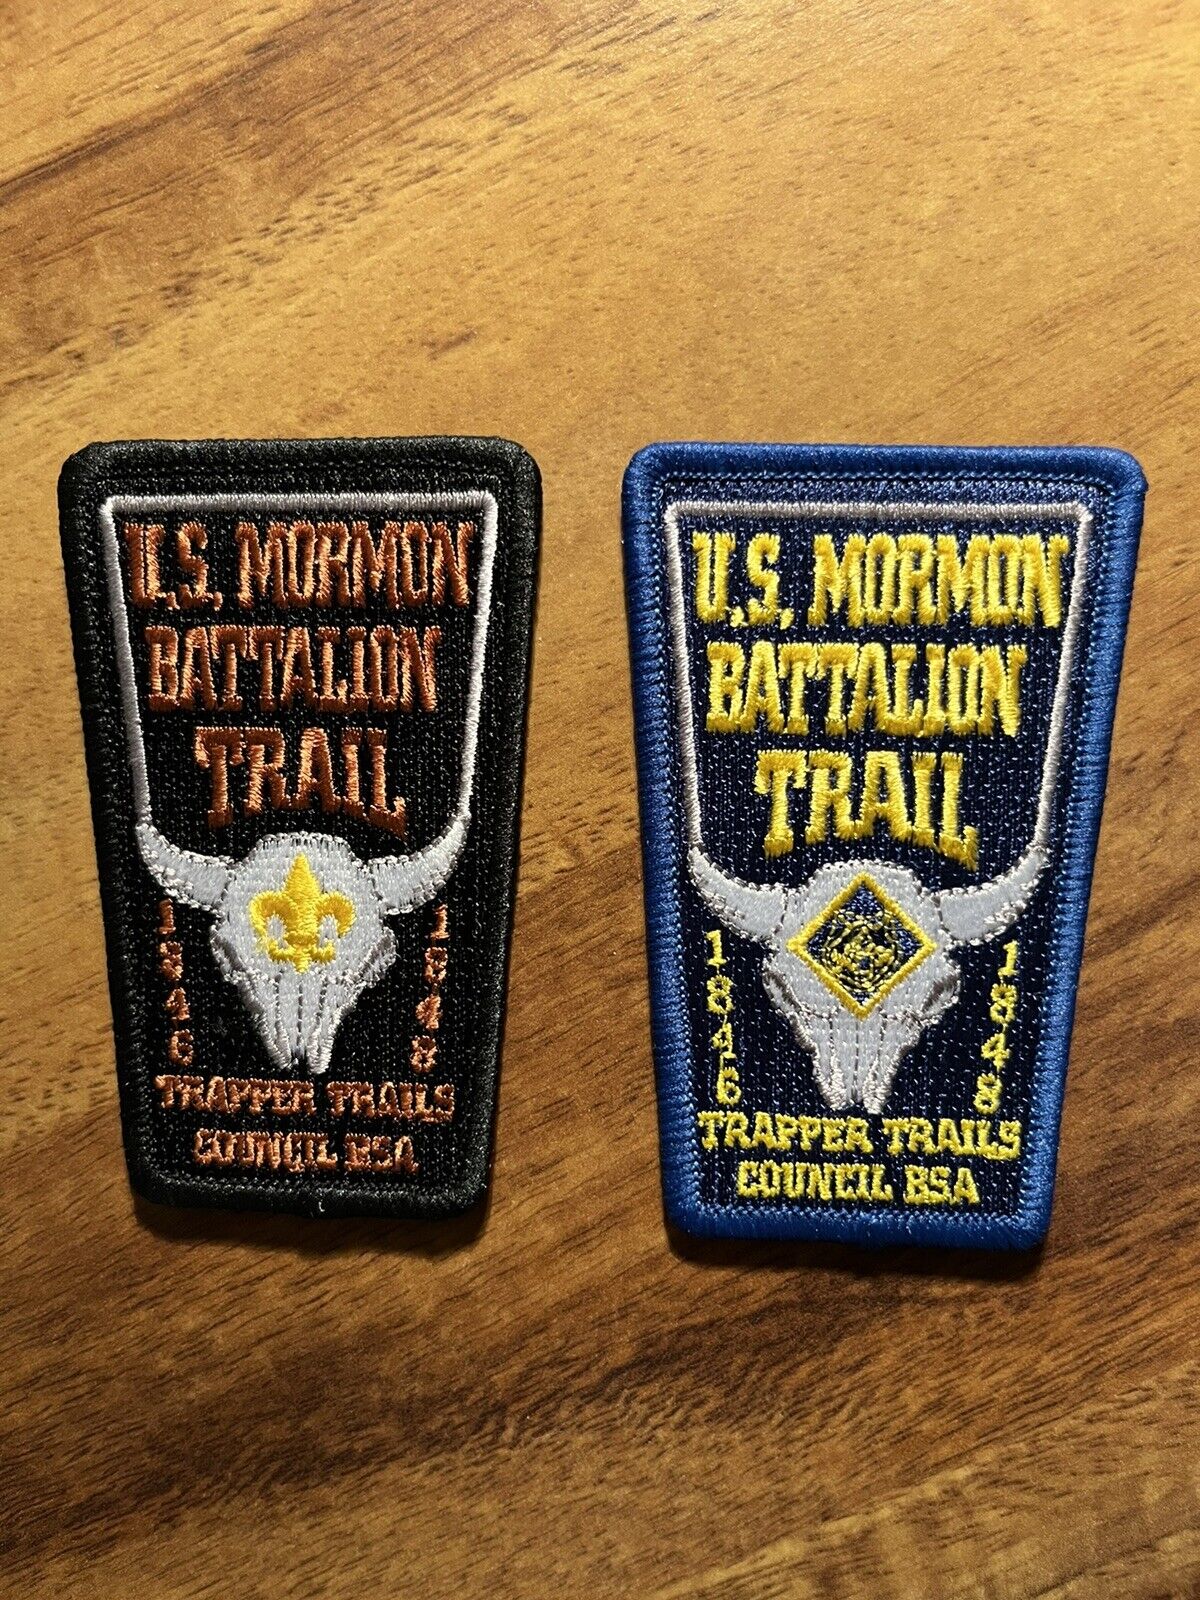 LDS-US Mormon Battalion Trapper Trails Council BSA Patch Set of 2